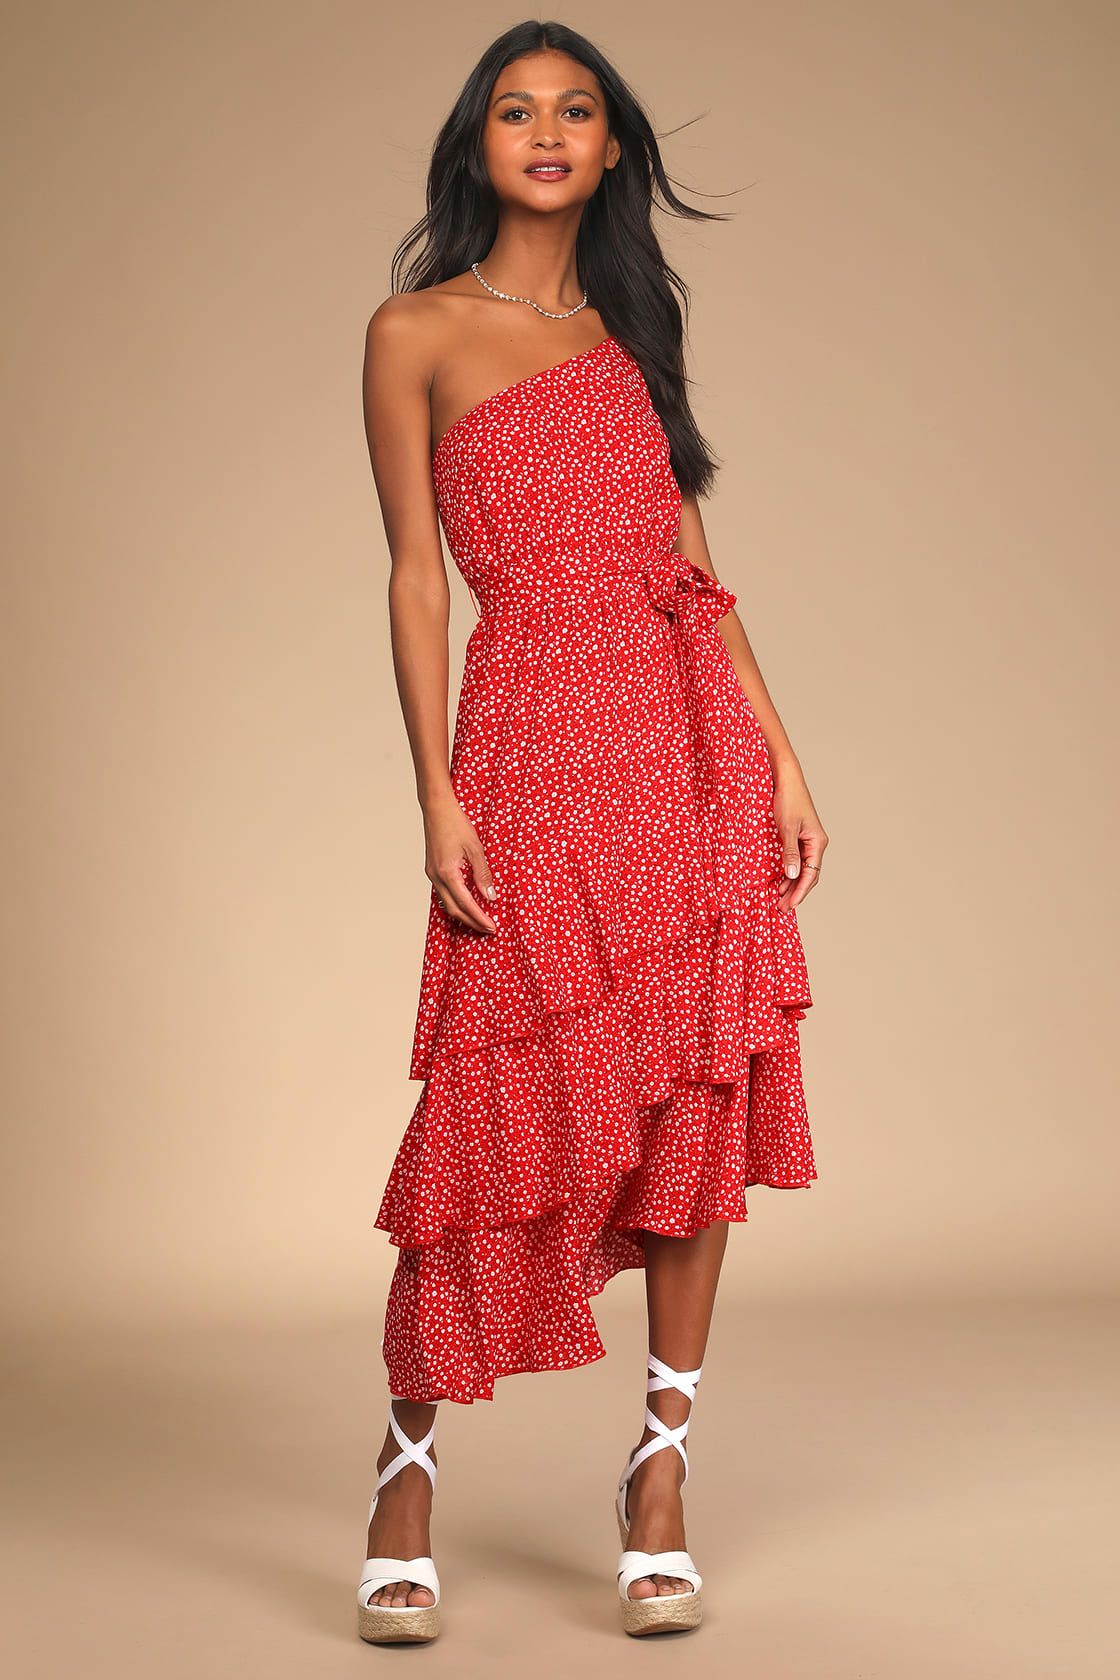 Slice of Sunshine Red Floral Print One-Shoulder Midi Dress | Lulus (US)